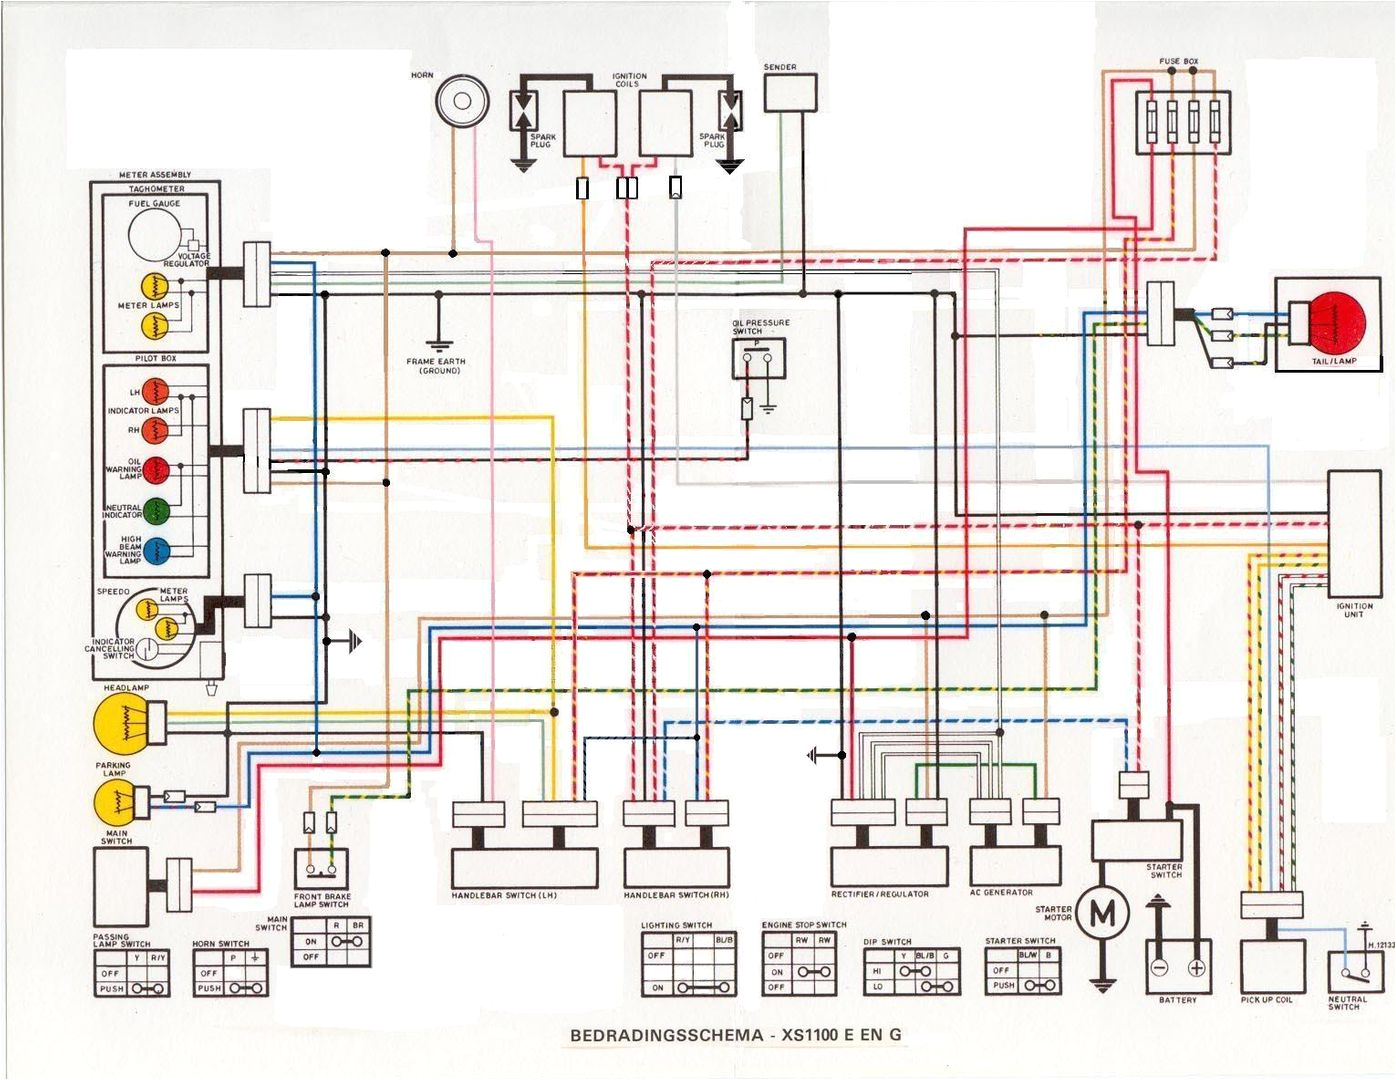 basic minimal wiring diagram yamaha 1100 wiring diagrams yamaha xs1100 wiring diagram